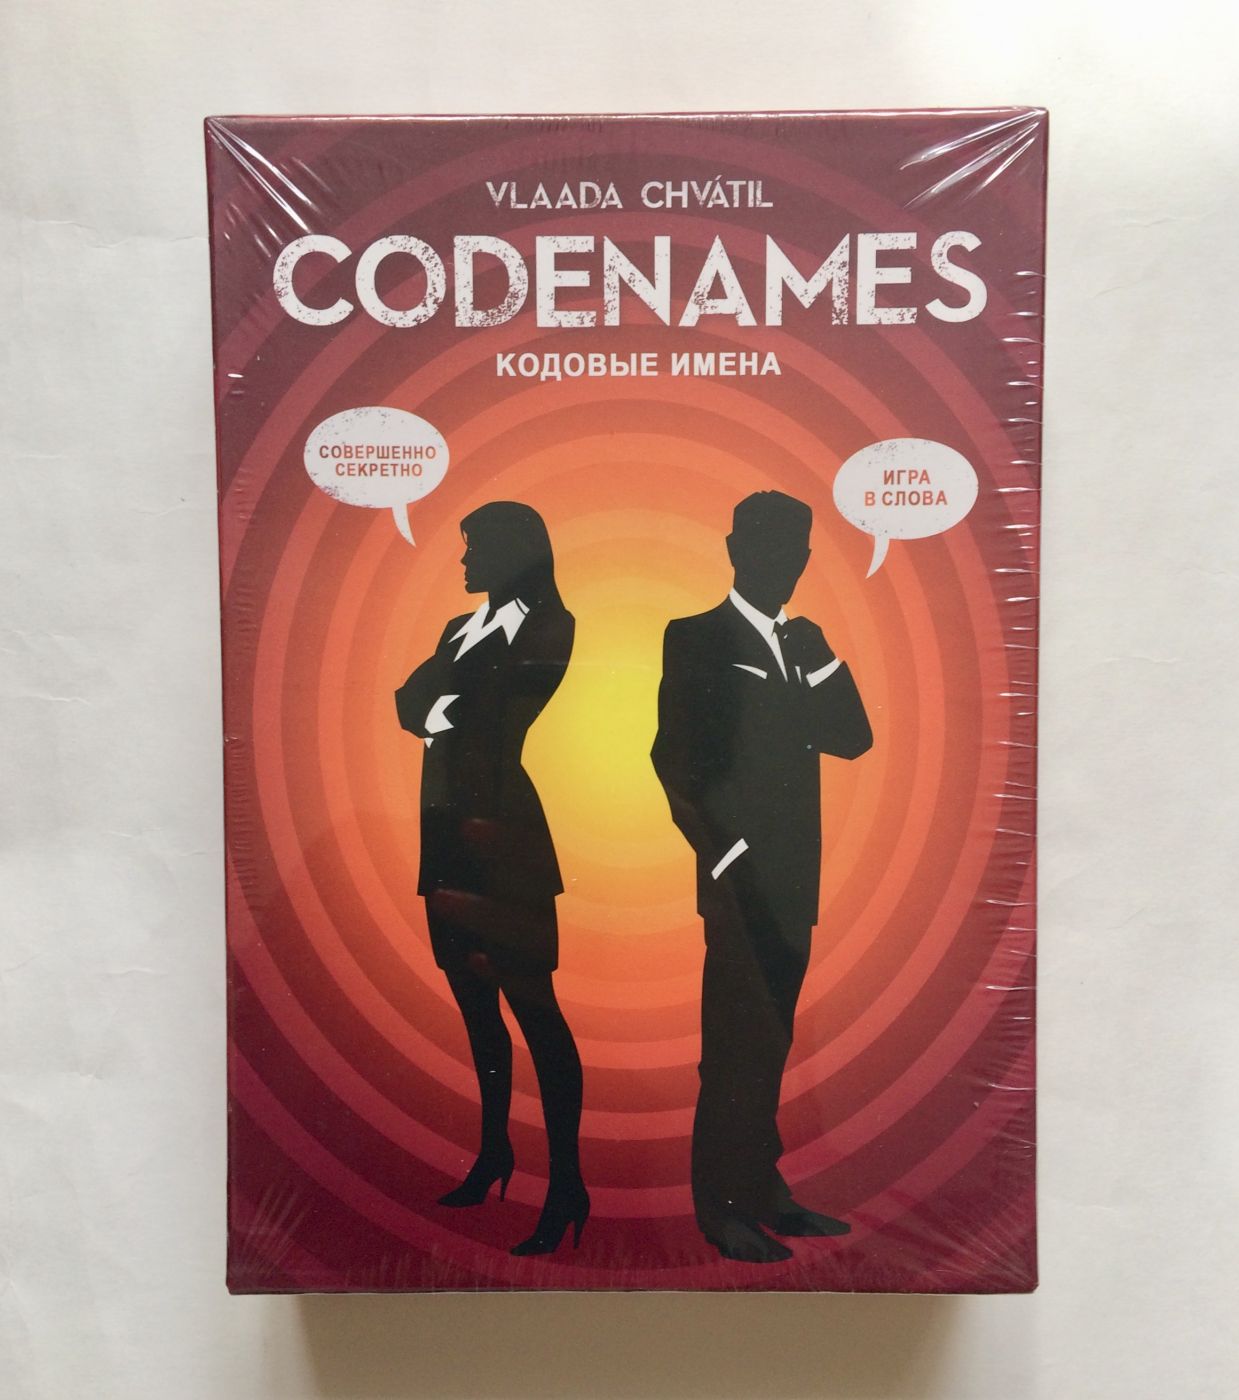 Игра настольная -Codenames (Код имени)